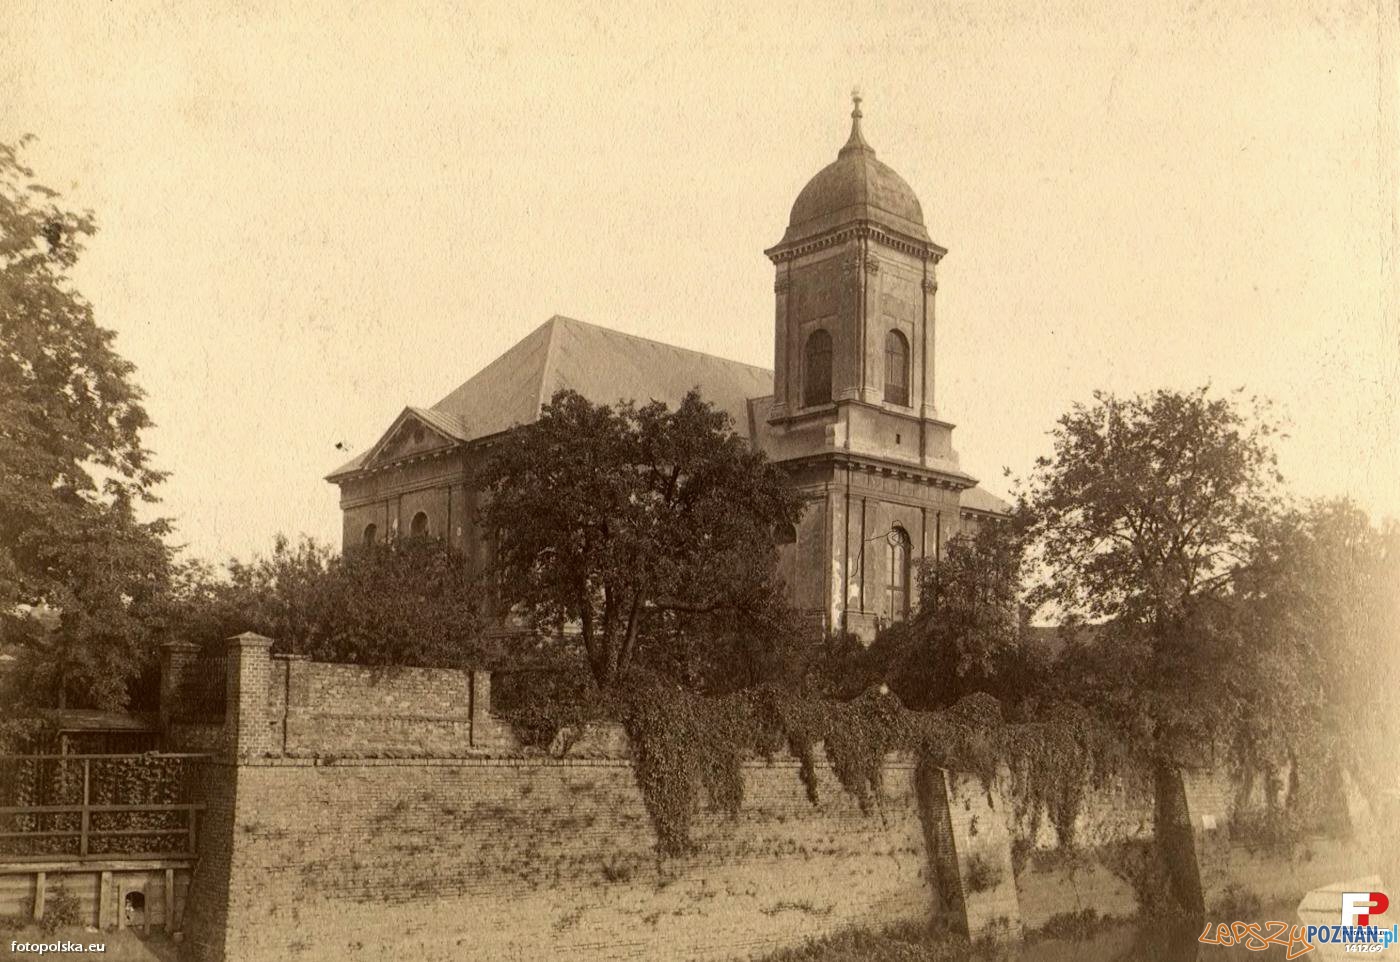 Kościół Wszystkich Świętych na Grobli, około 1880 roku Foto: fotopolska.eu